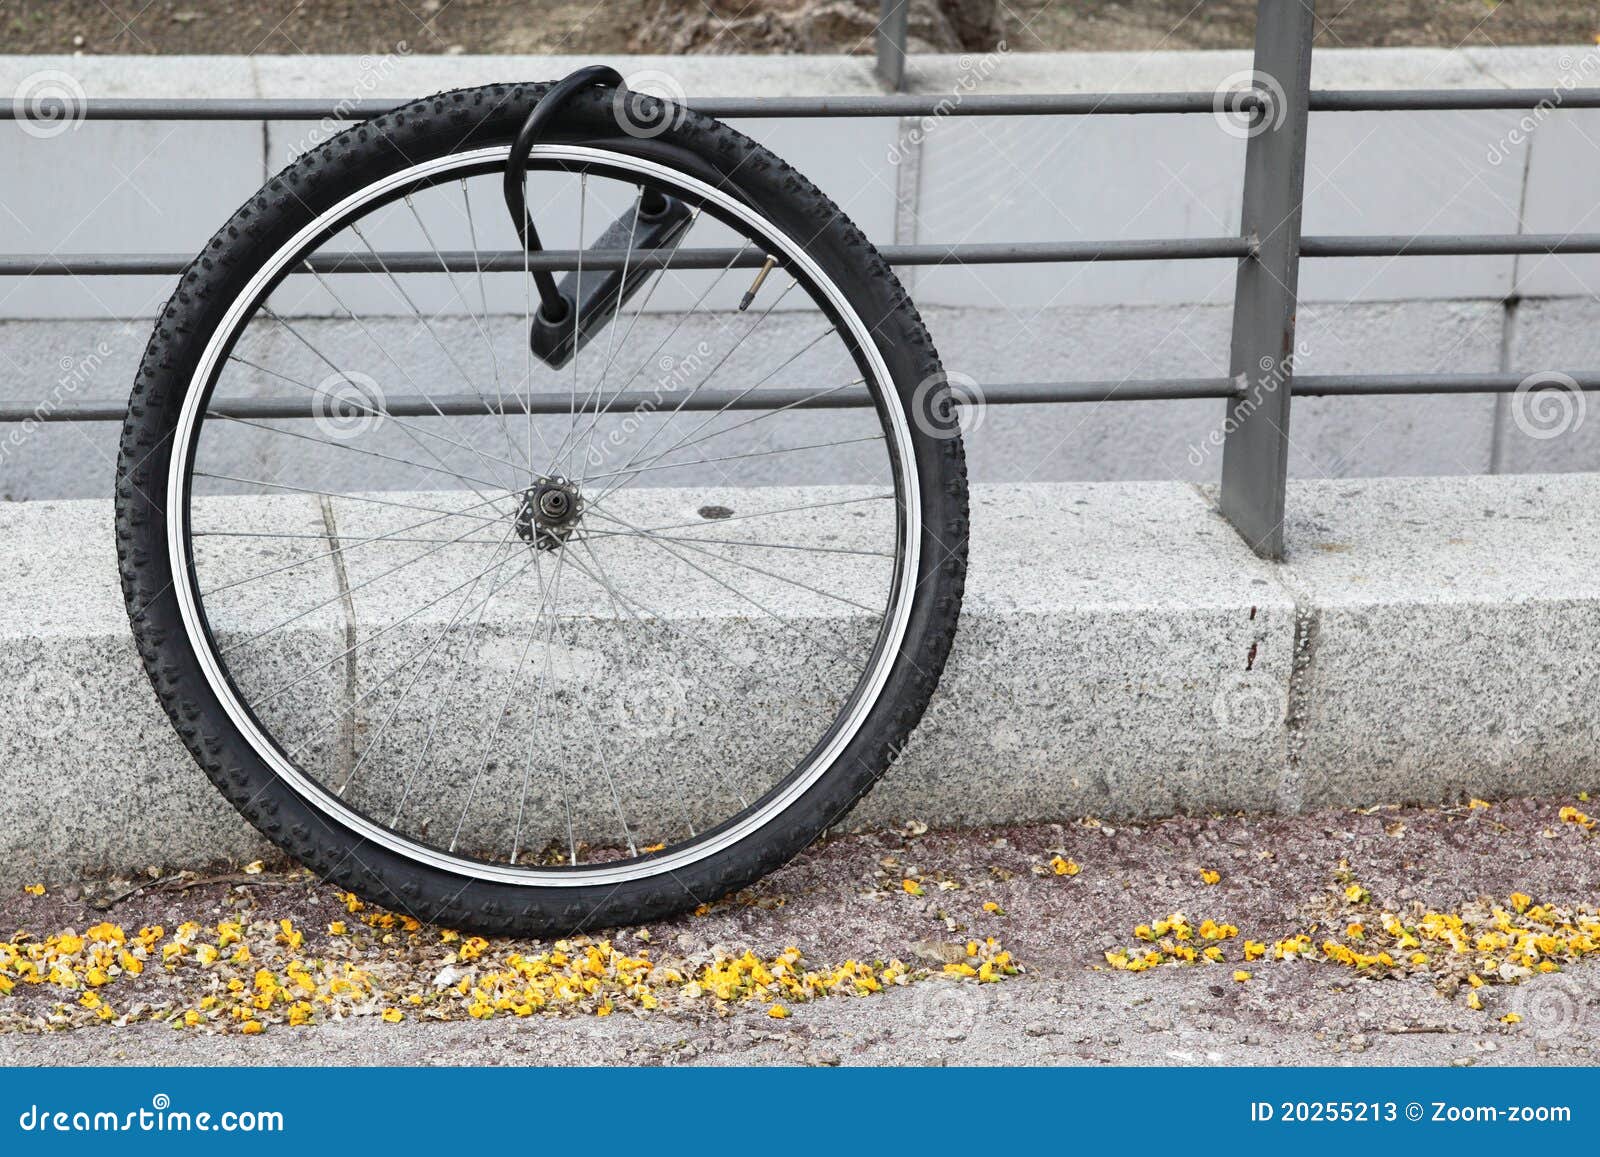 wheel of stolen bicycle